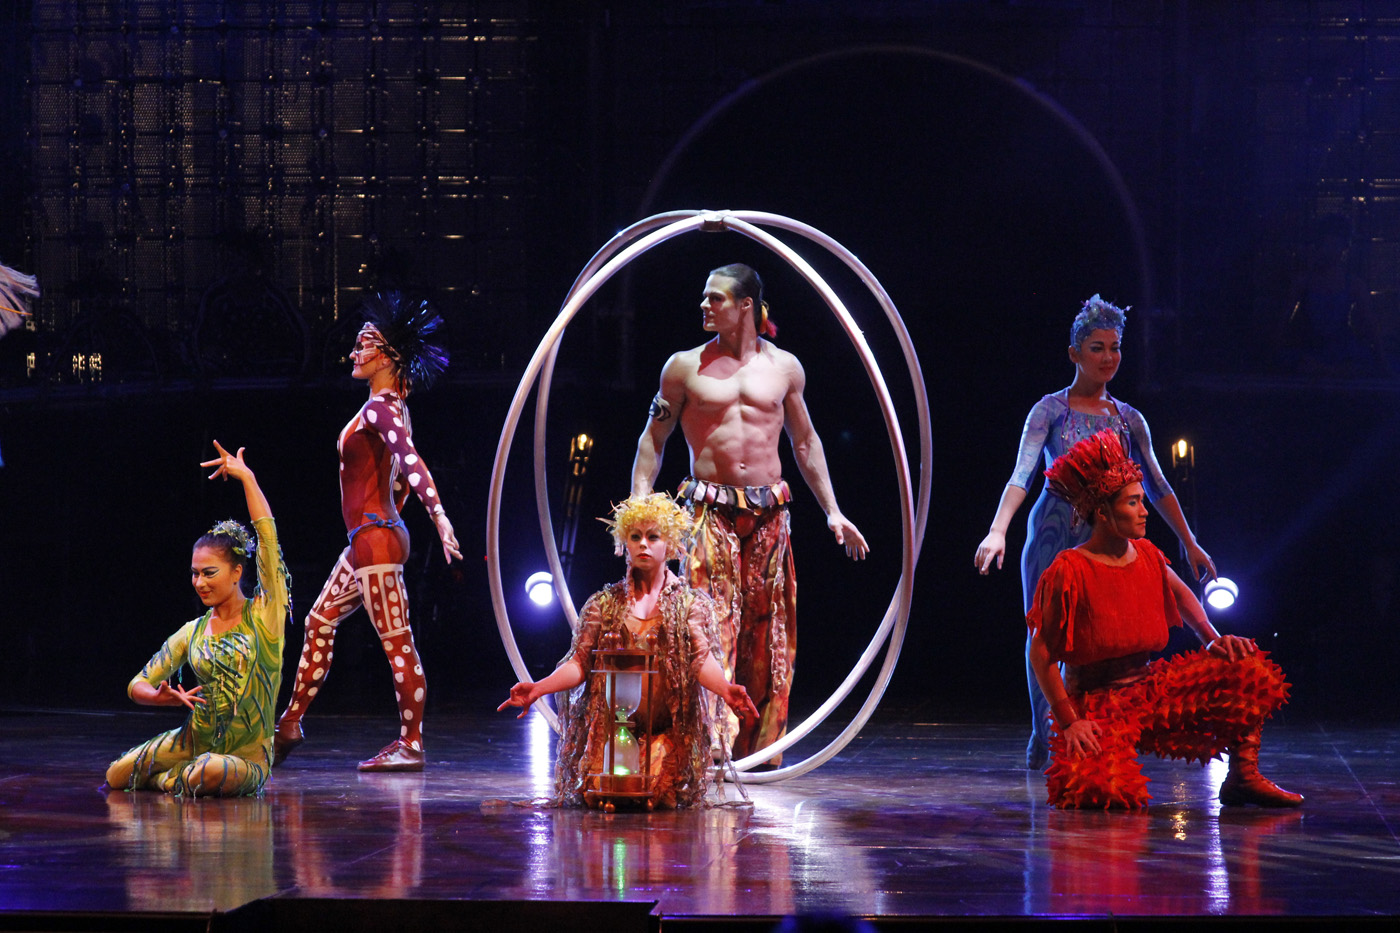 Así es Dralion, del Cirque du Soleil (Fotos)